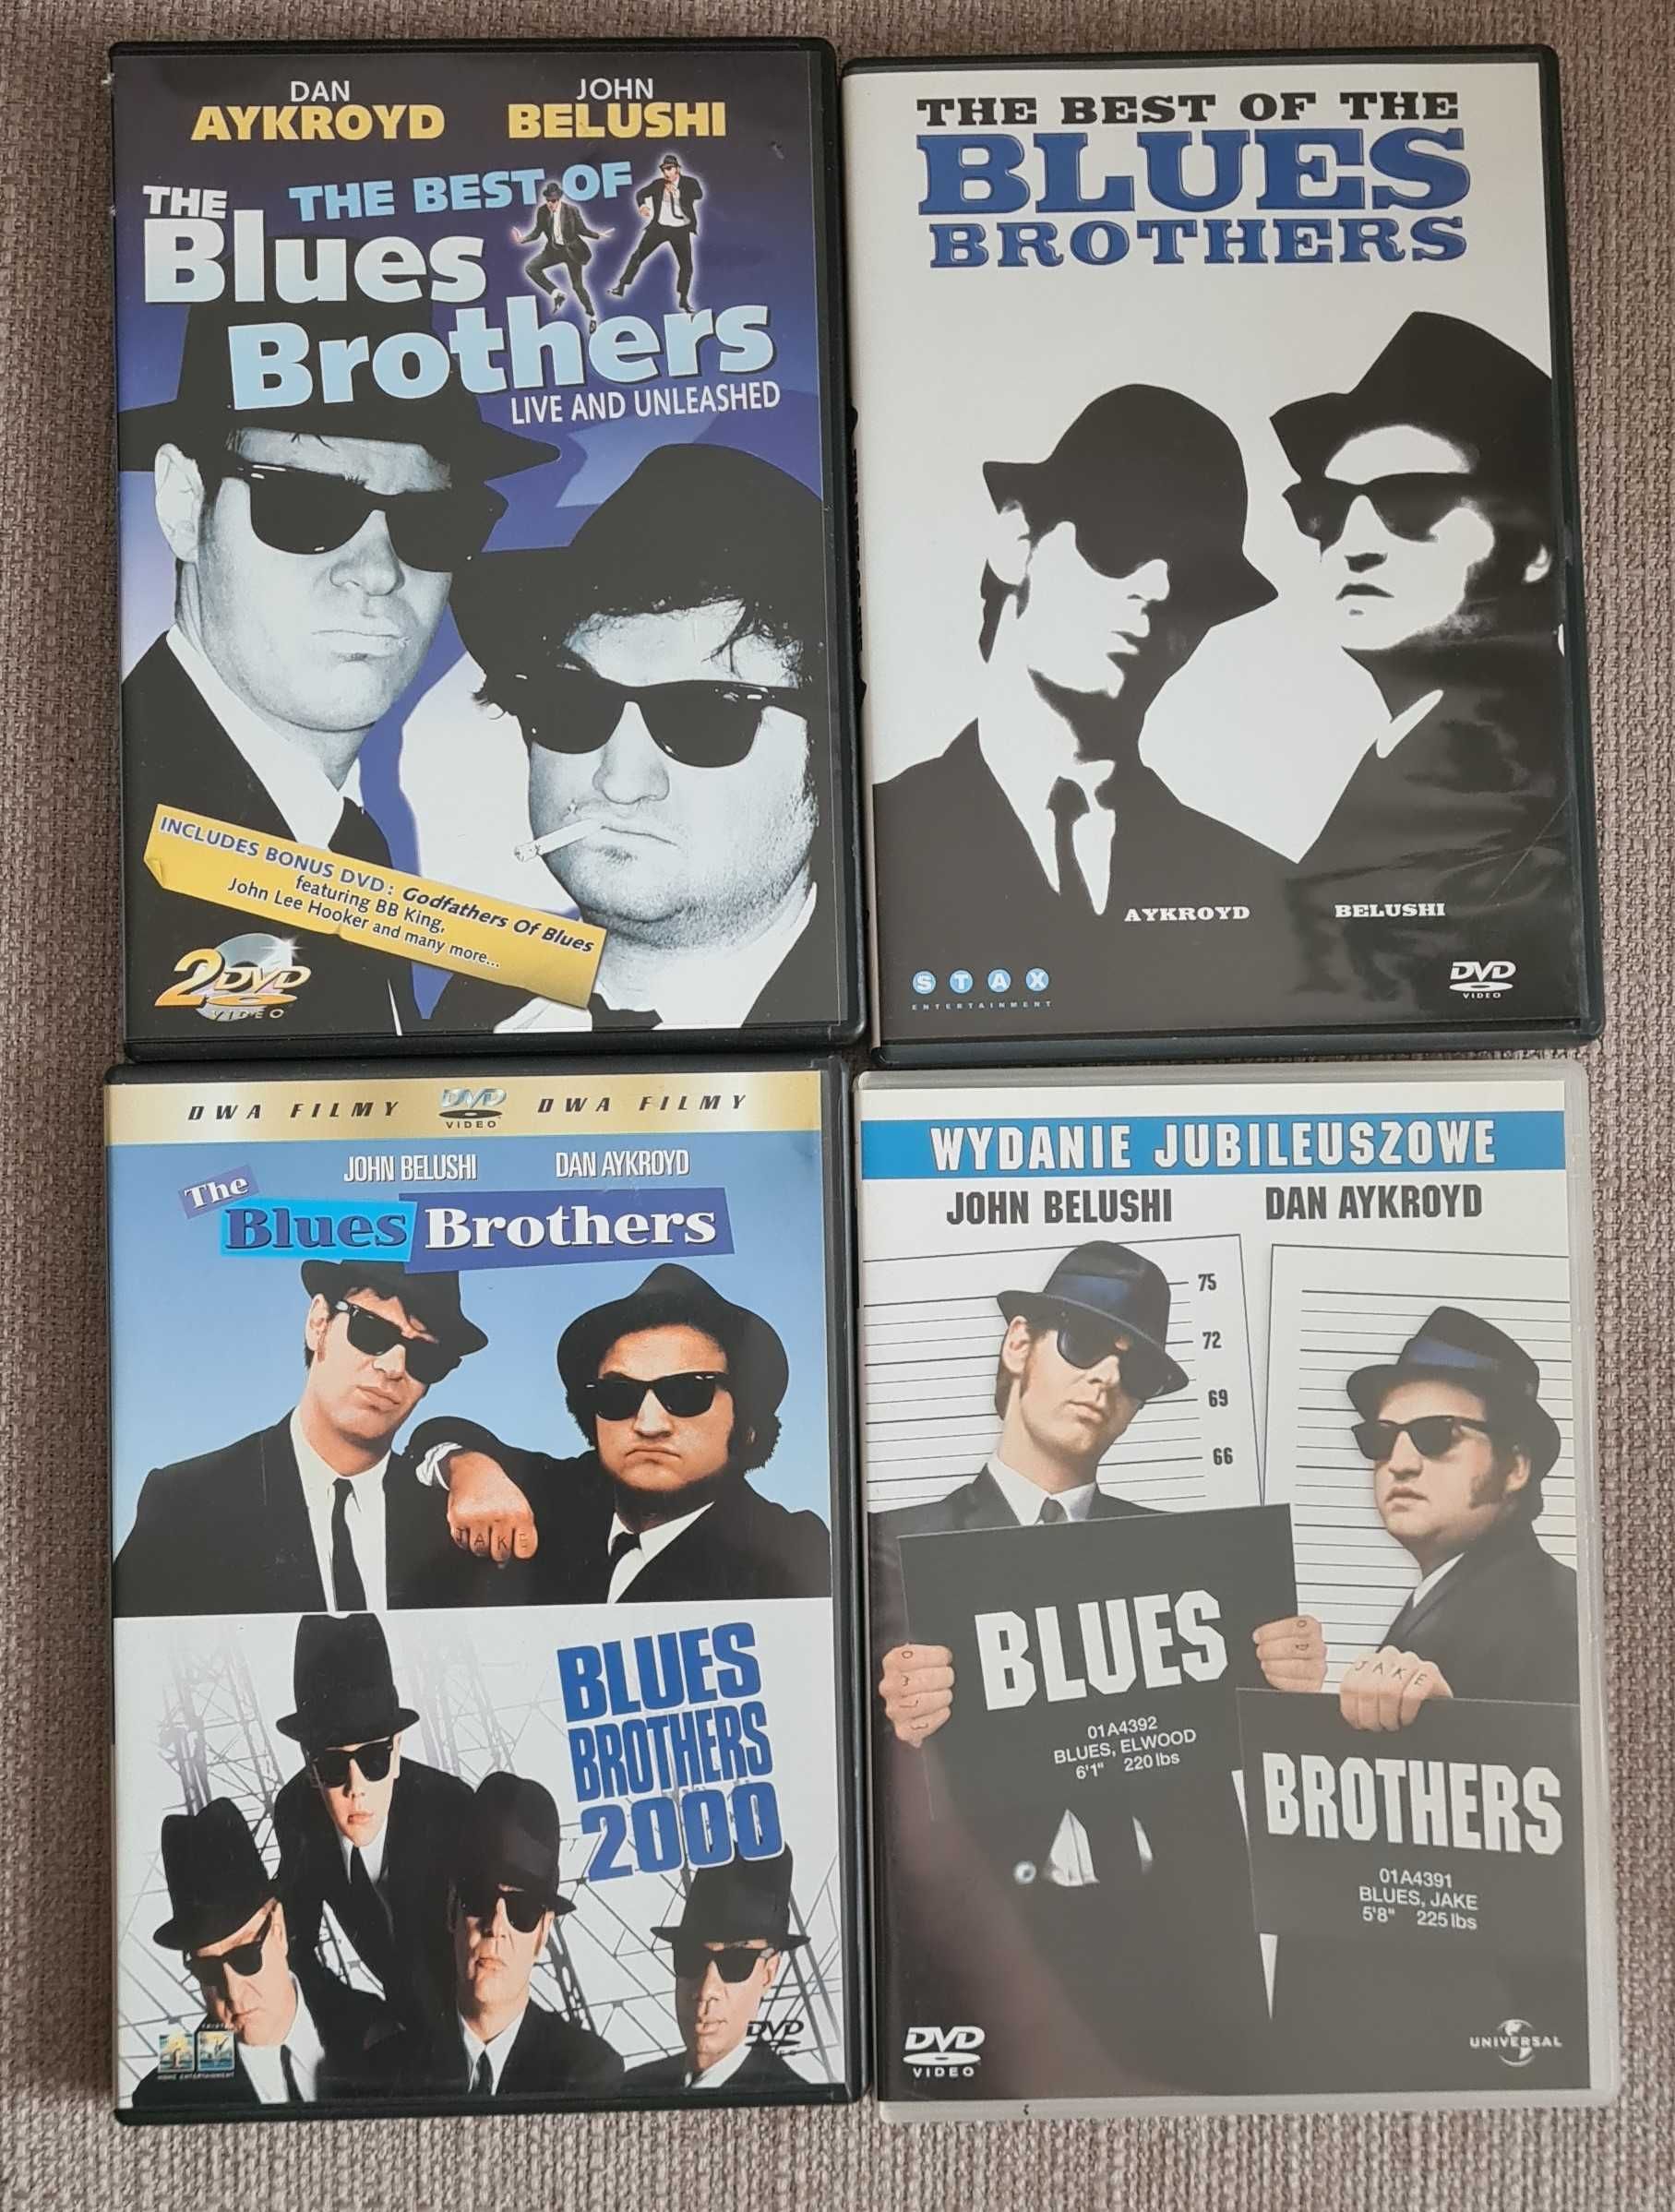 Zestaw DVD BLUES BROTHERS: The best of.., wydanie jubileuszowe, Live